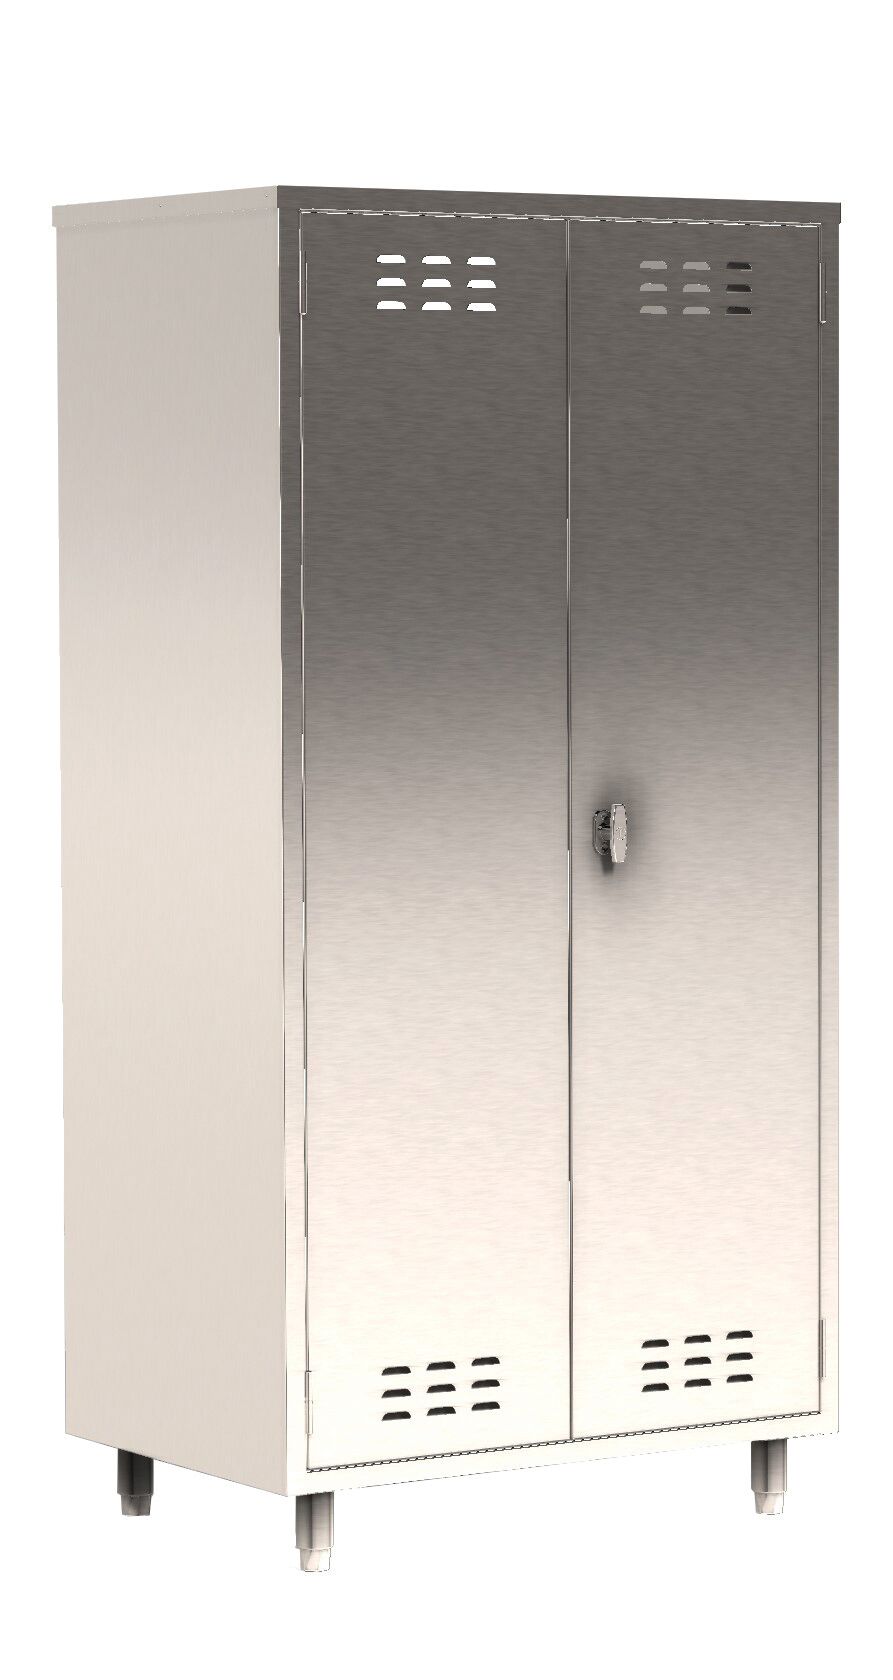 Parry COSHD - COSHH Double Door Cupboard